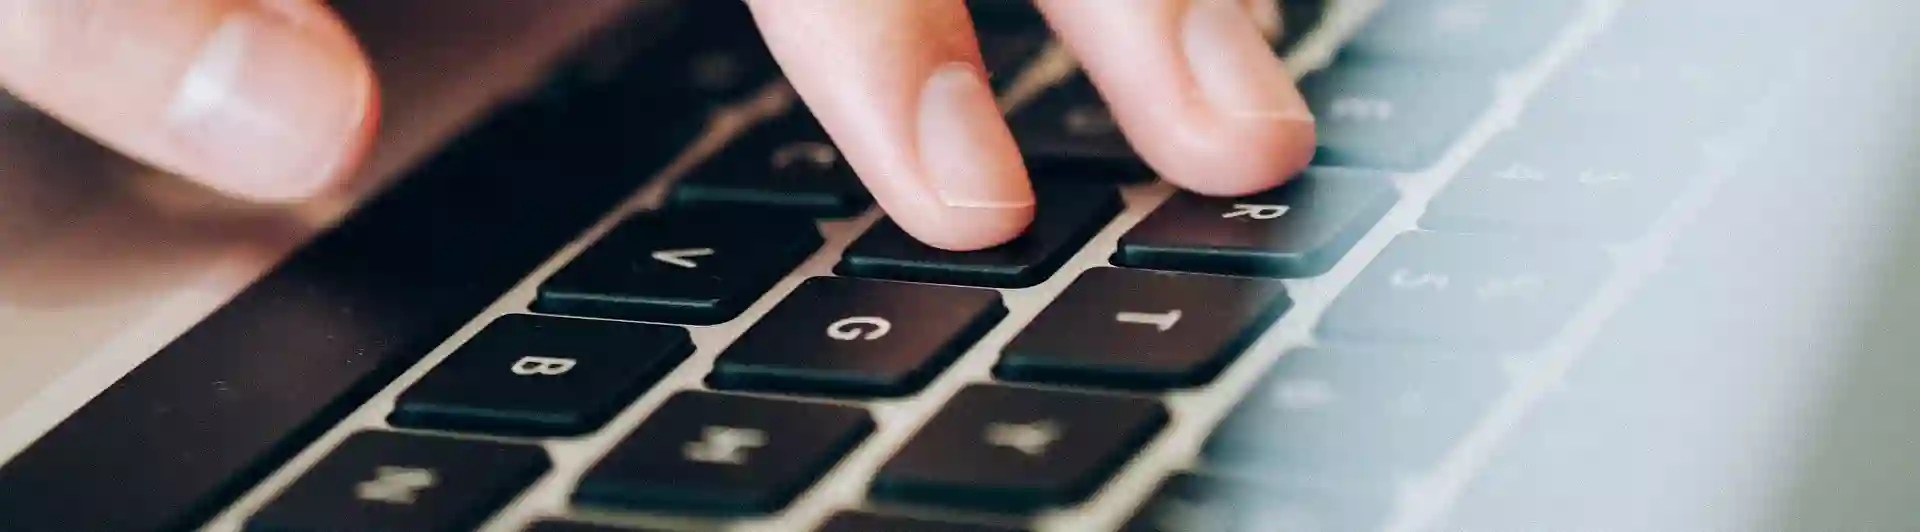 Bild som visar en hand på en bärbar dator.